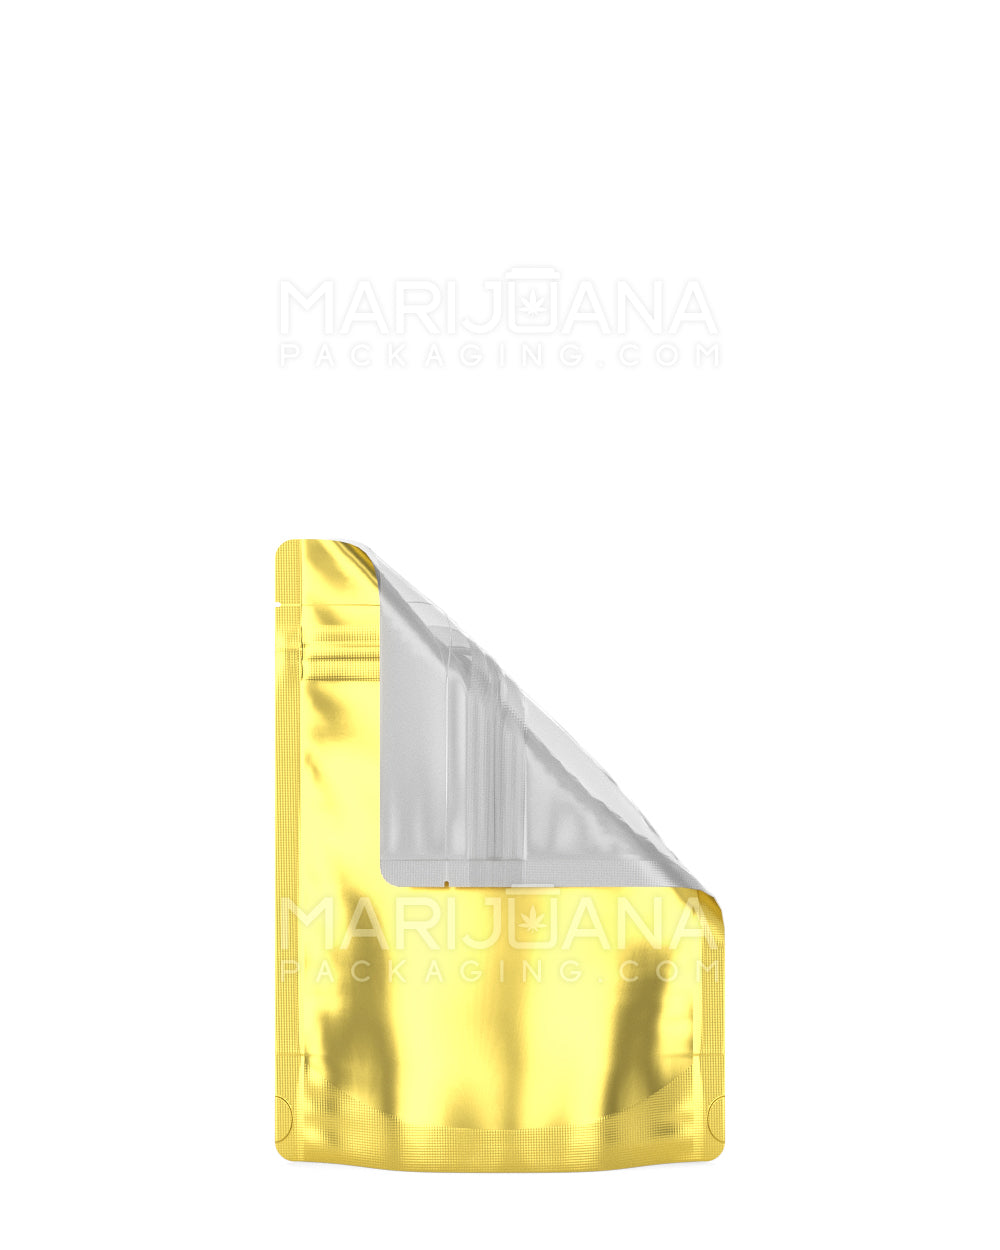 Tamper Evident Matte Gold Vista Mylar Bag | 3.6in x 5in - 3.5g | Sample - 1